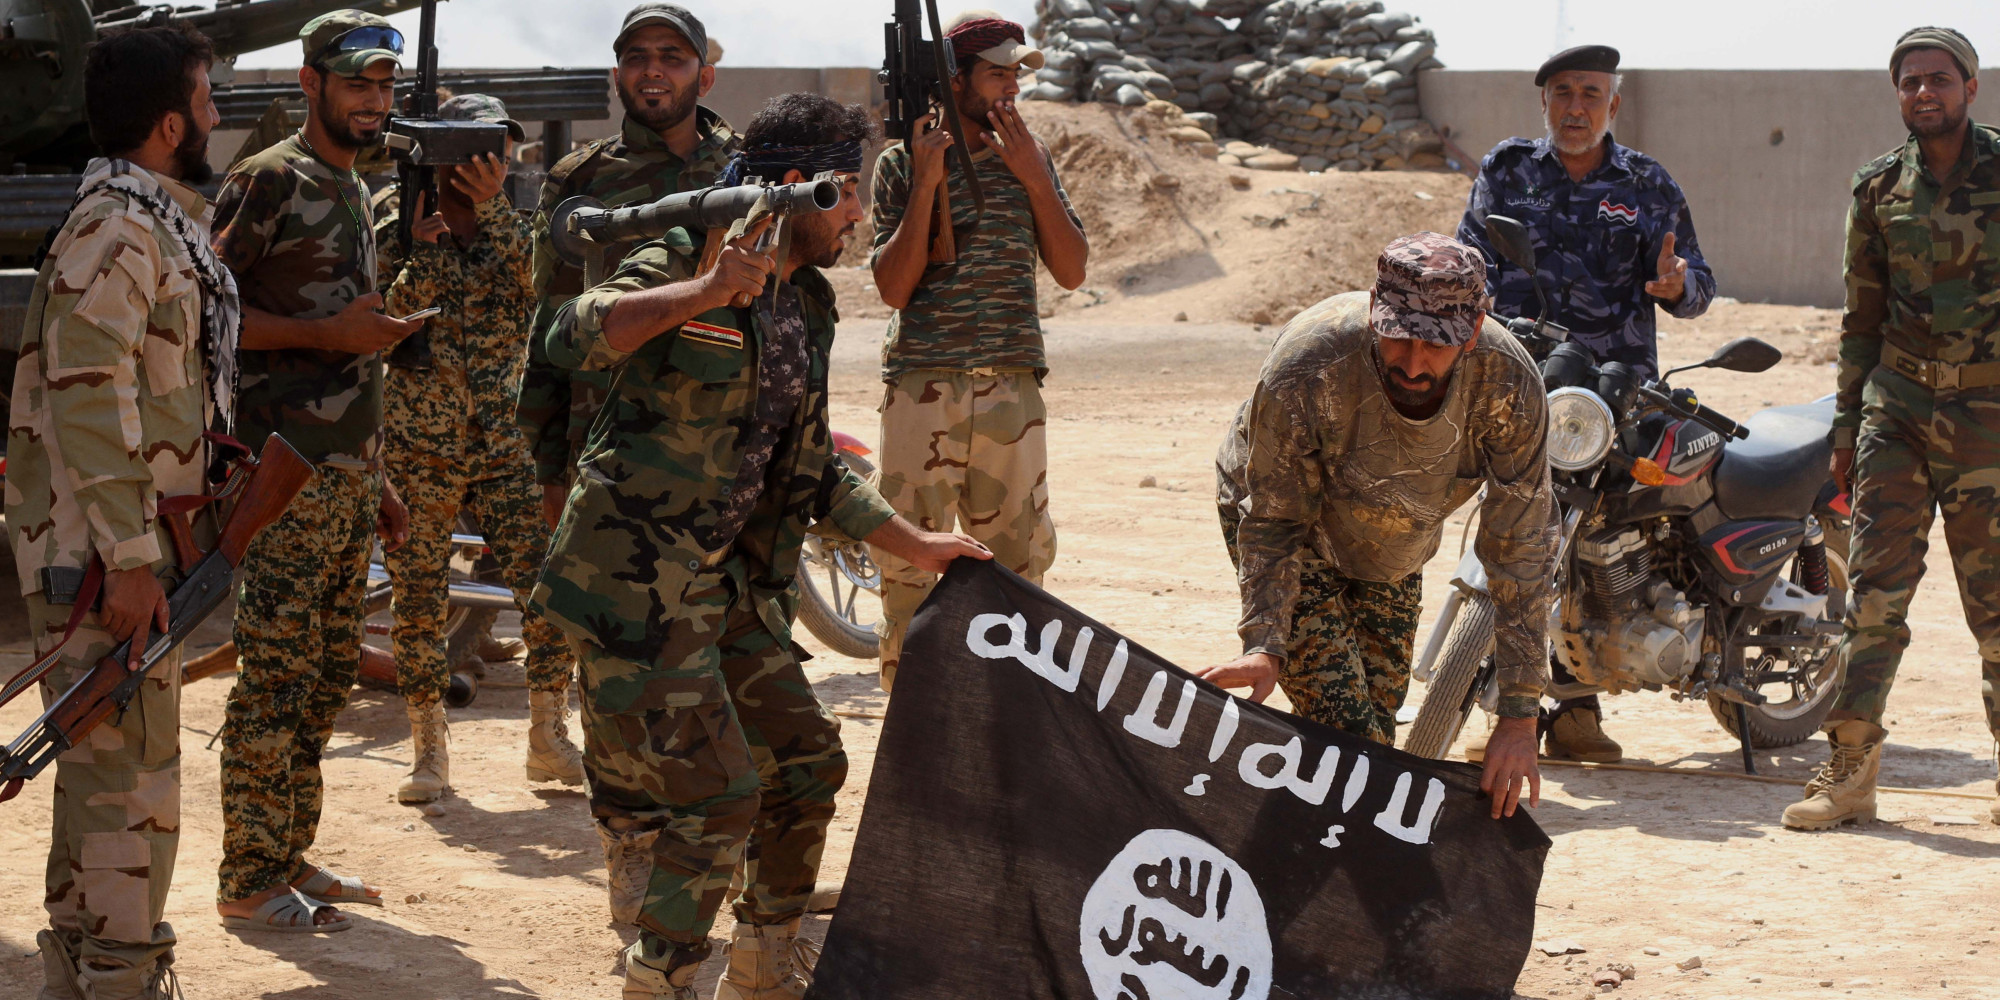 Игил по английски. Исламское государство Ирака и Сирии. Террористическая группировка «Исламское государство» в Сирии. Исламистская группировка Вилаят Синай.